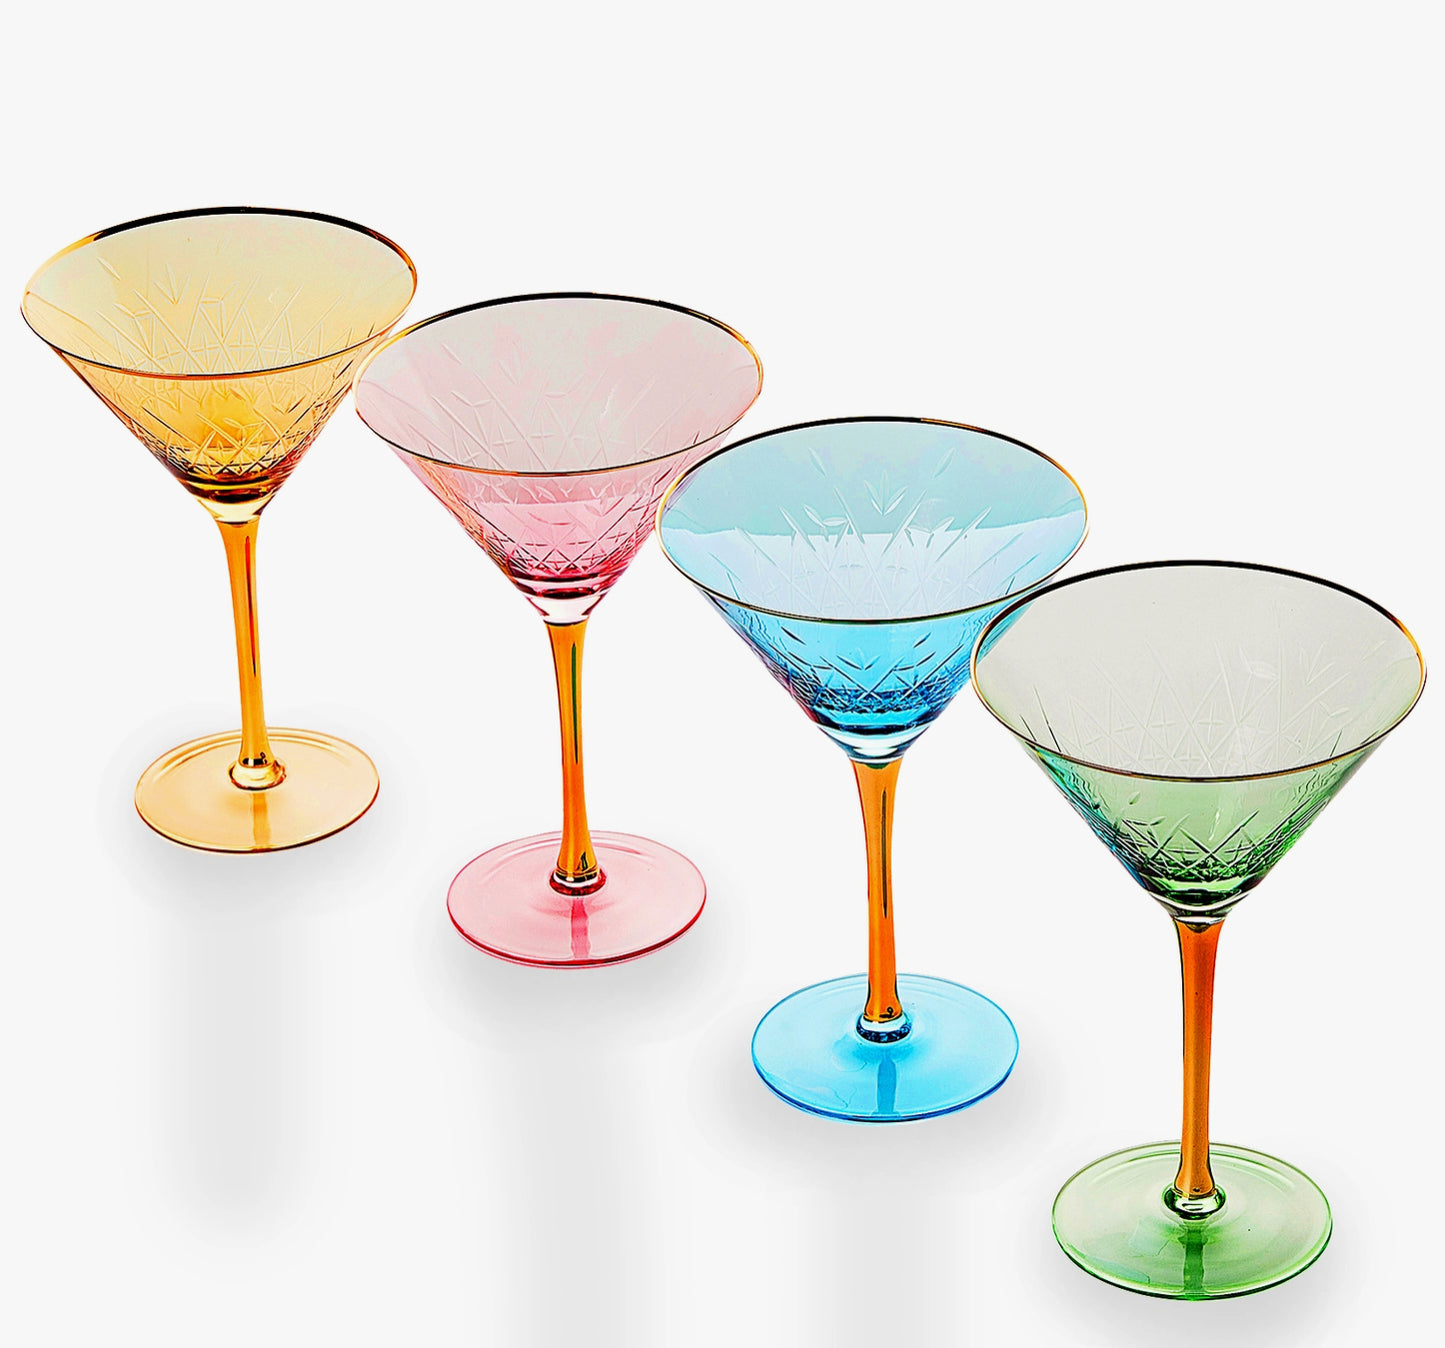 Set 4 Gold Rimmed Crystal Martini Glasses